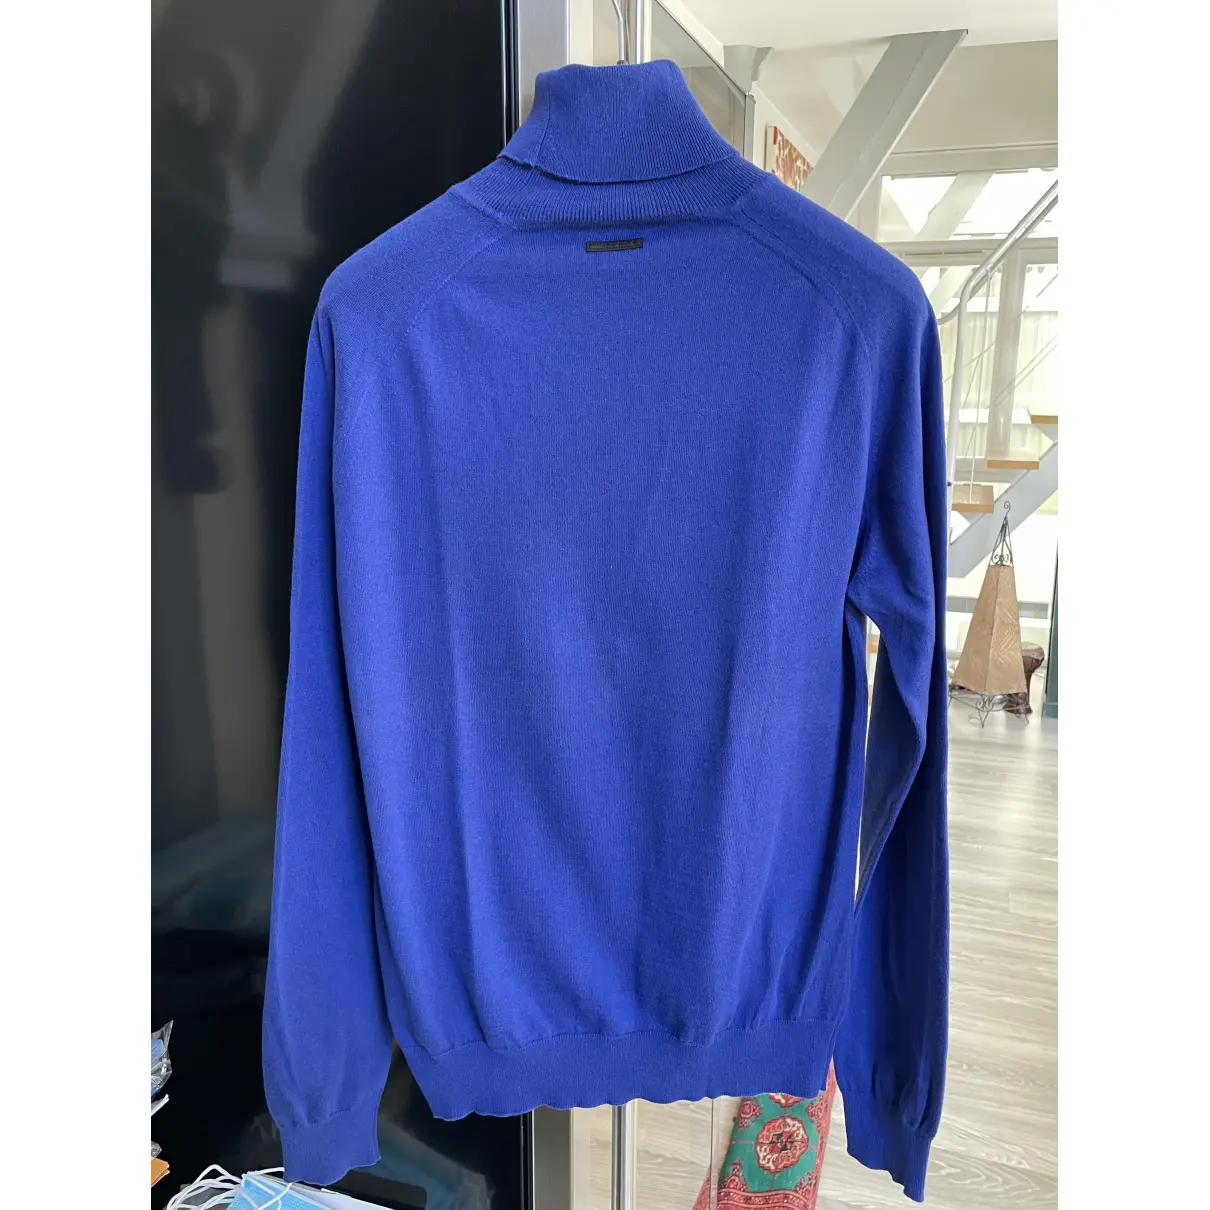 Buy Prada Blue Cotton Knitwear & Sweatshirt online